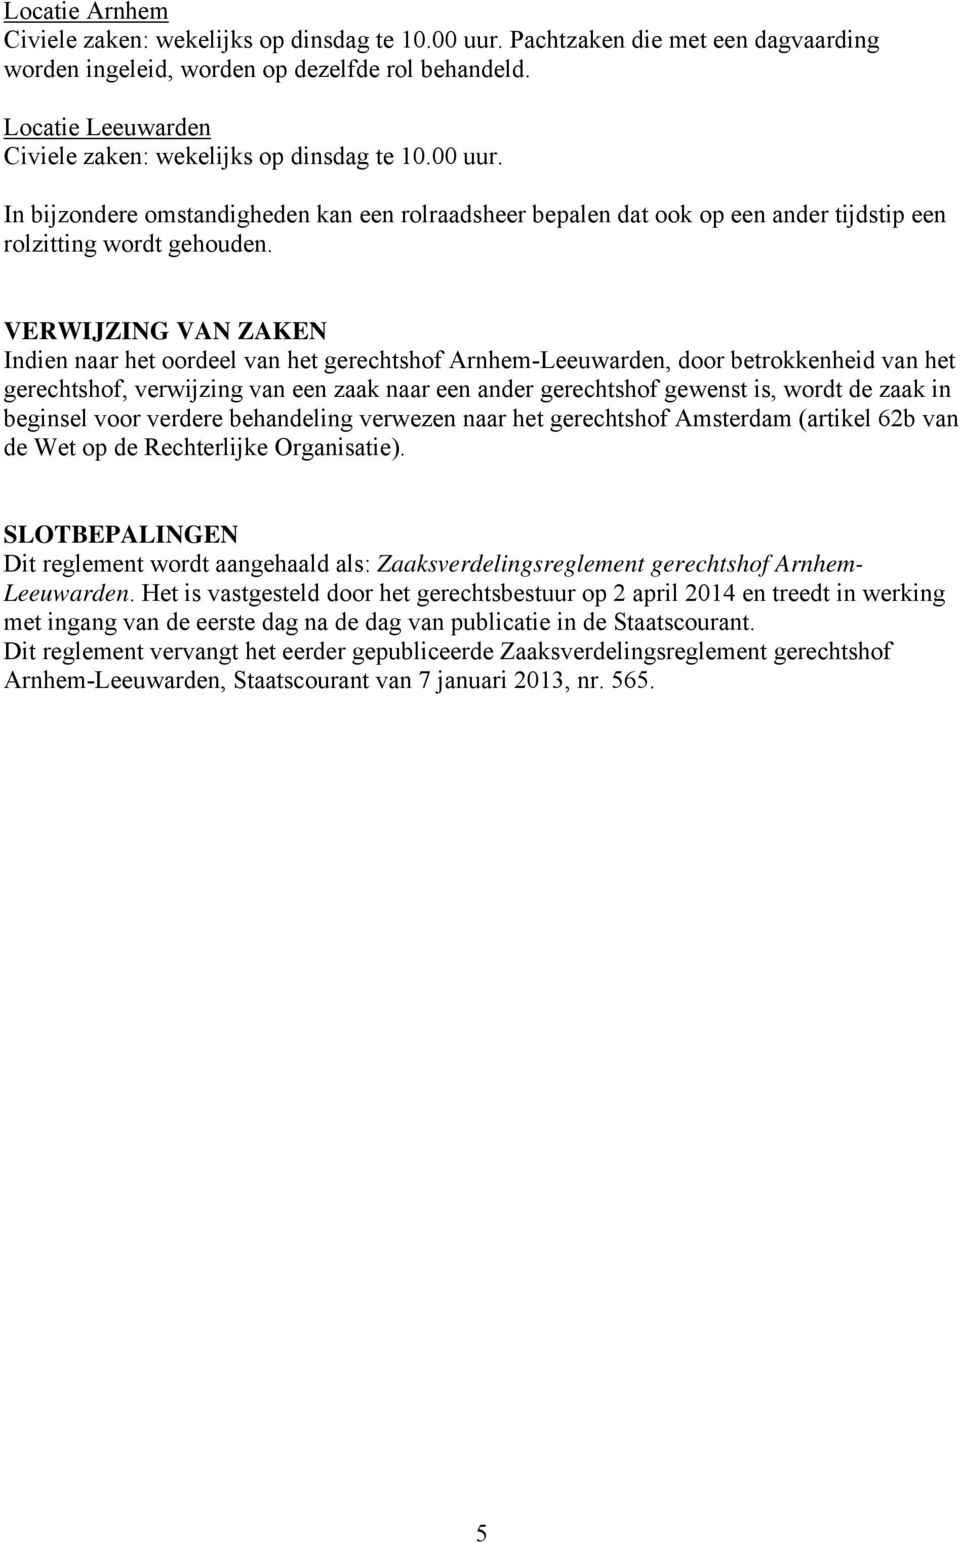 zaak in beginsel voor verdere behandeling verwezen naar het gerechtshof Amsterdam (artikel 62b van de Wet op de Rechterlijke Organisatie).